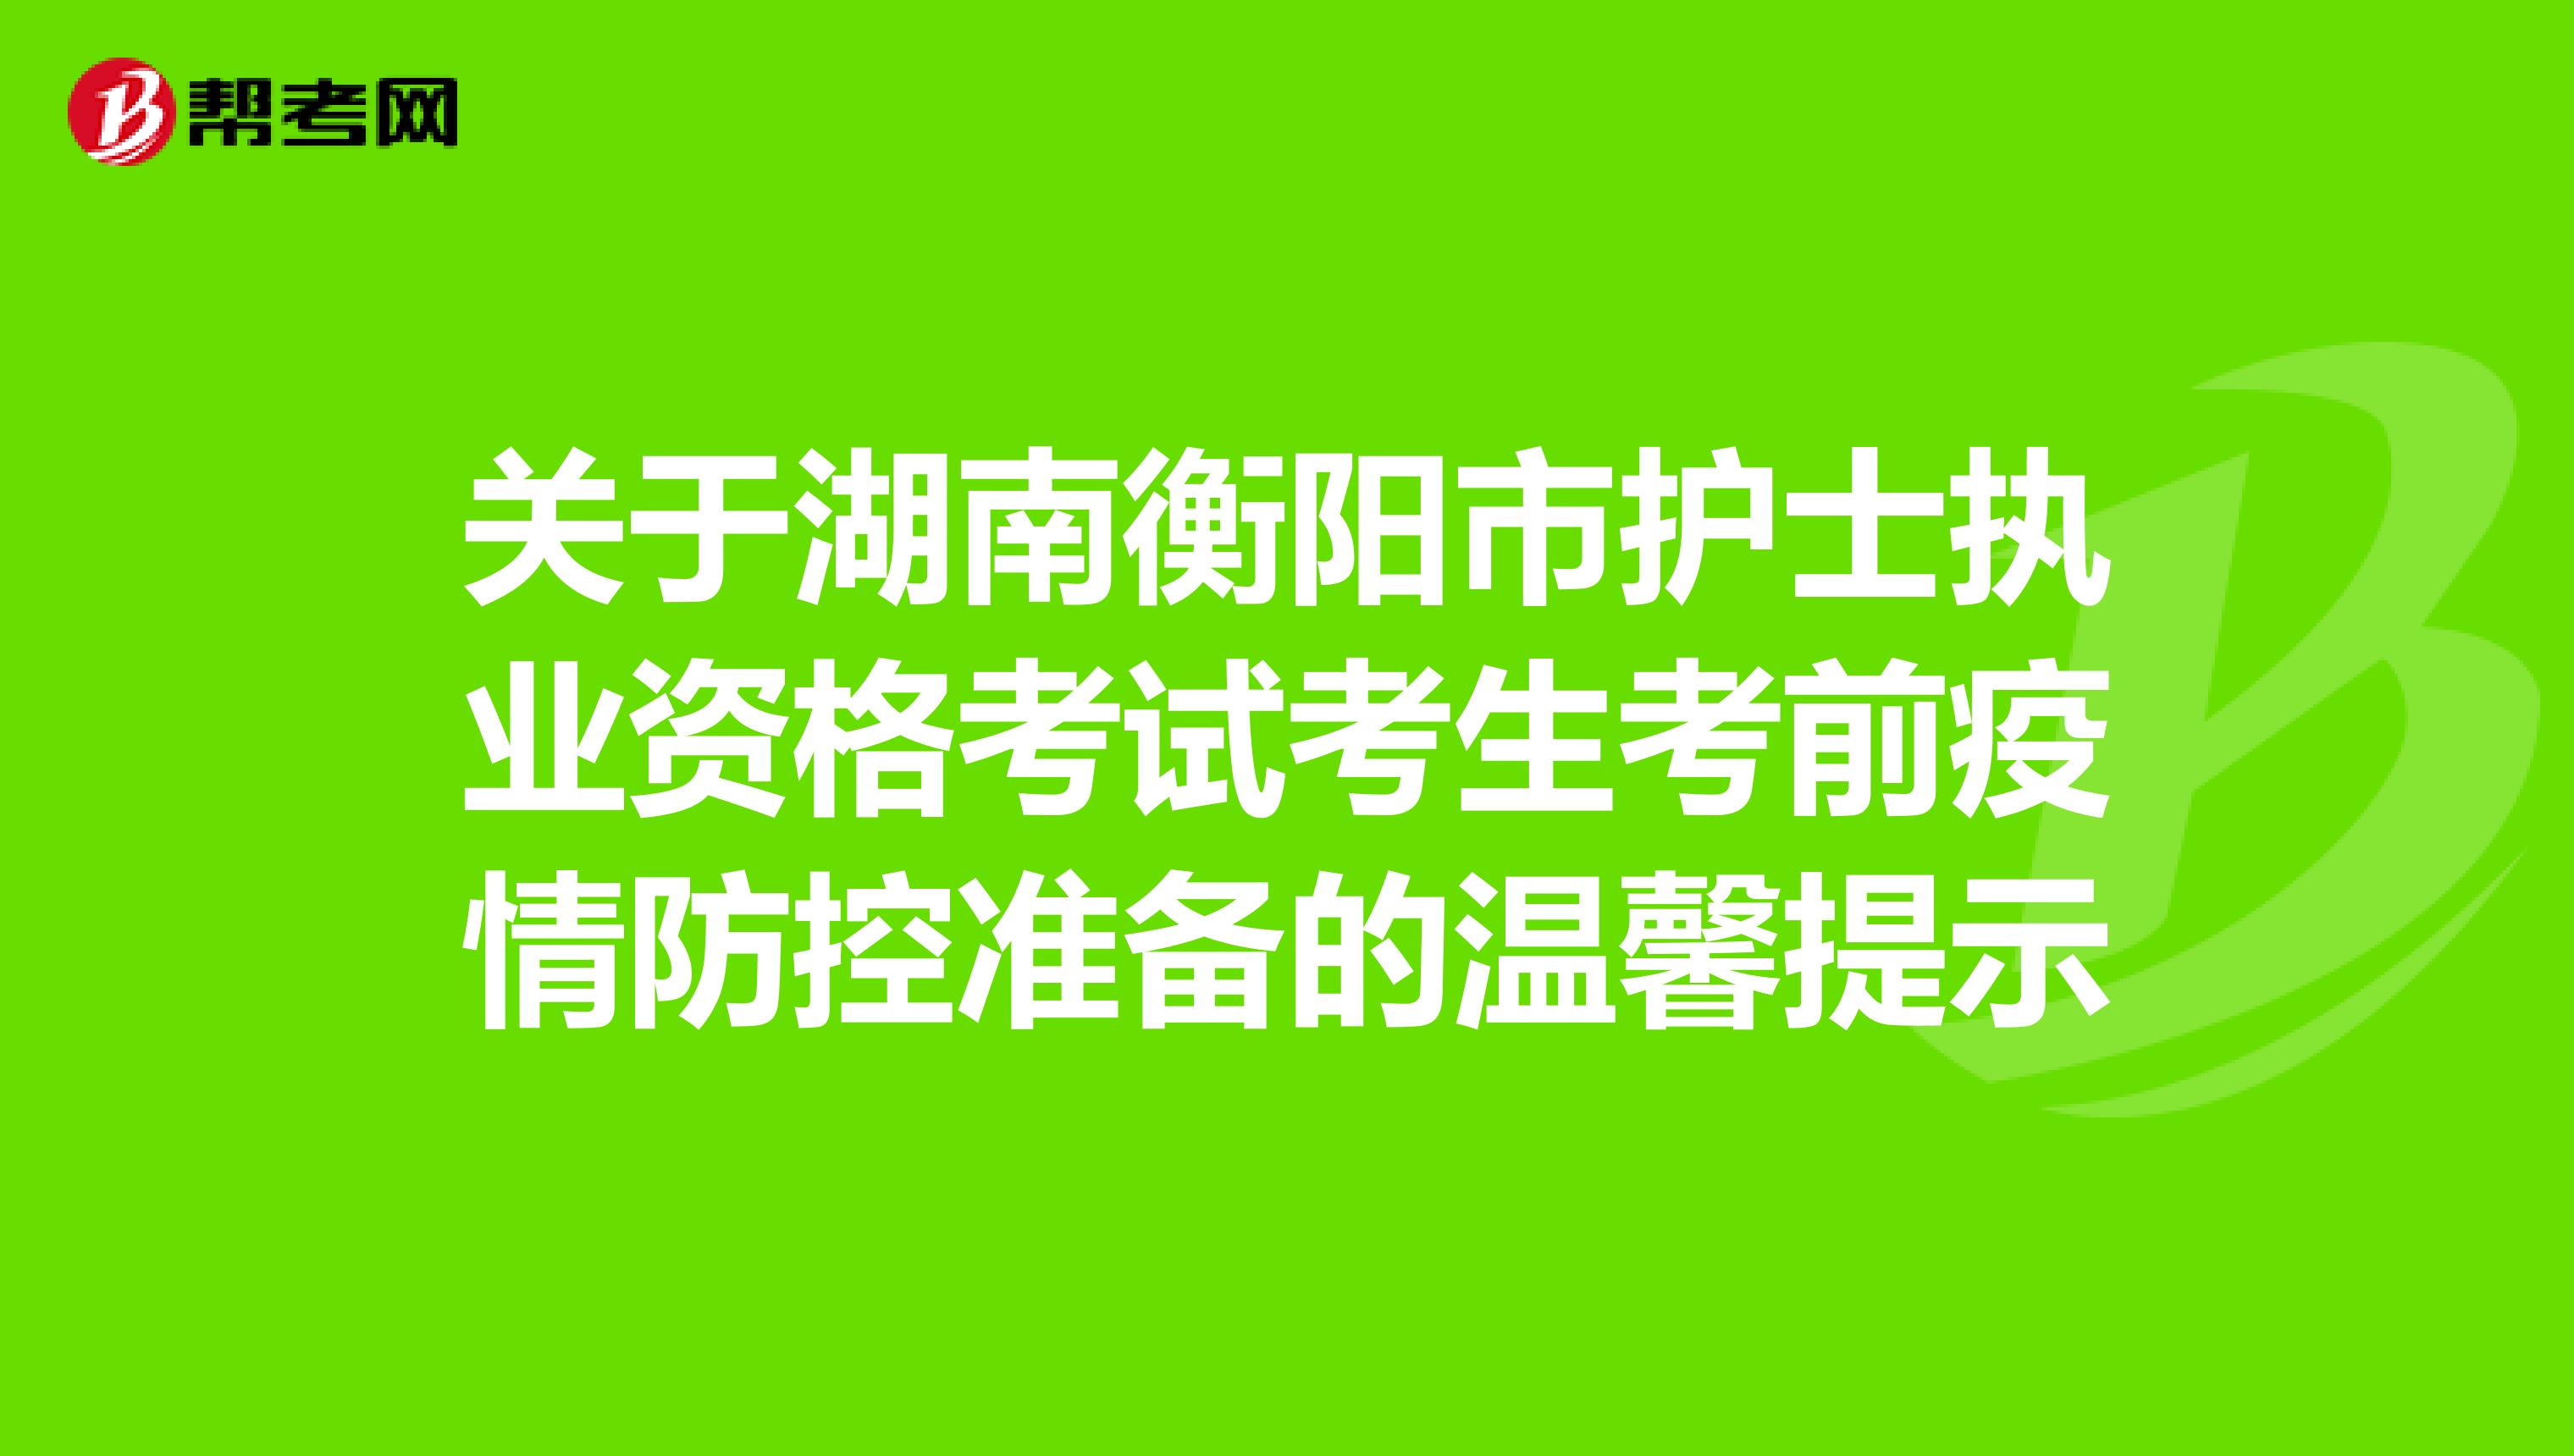 关于湖南衡阳市护士执业资格考试考生考前疫情防控准备的温馨提示